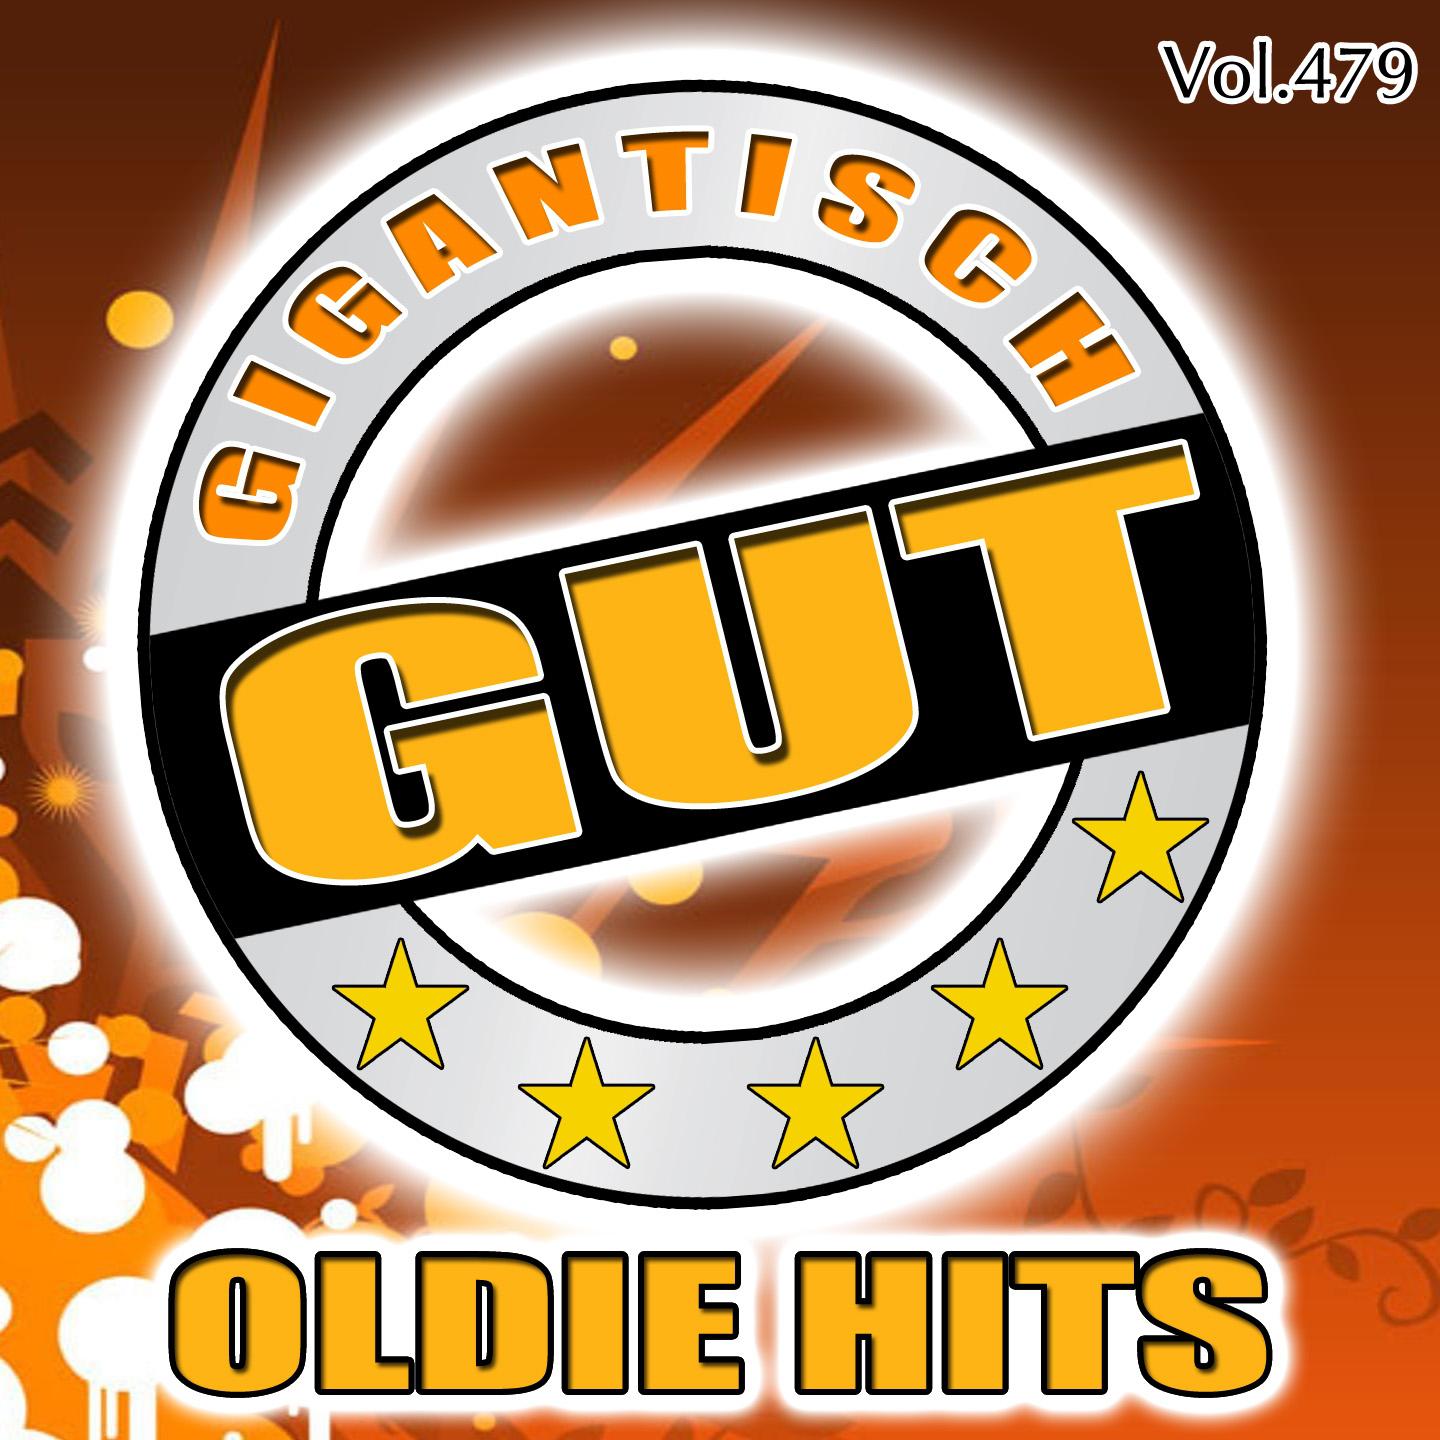 Gigantisch Gut: Oldie Hits, Vol. 479